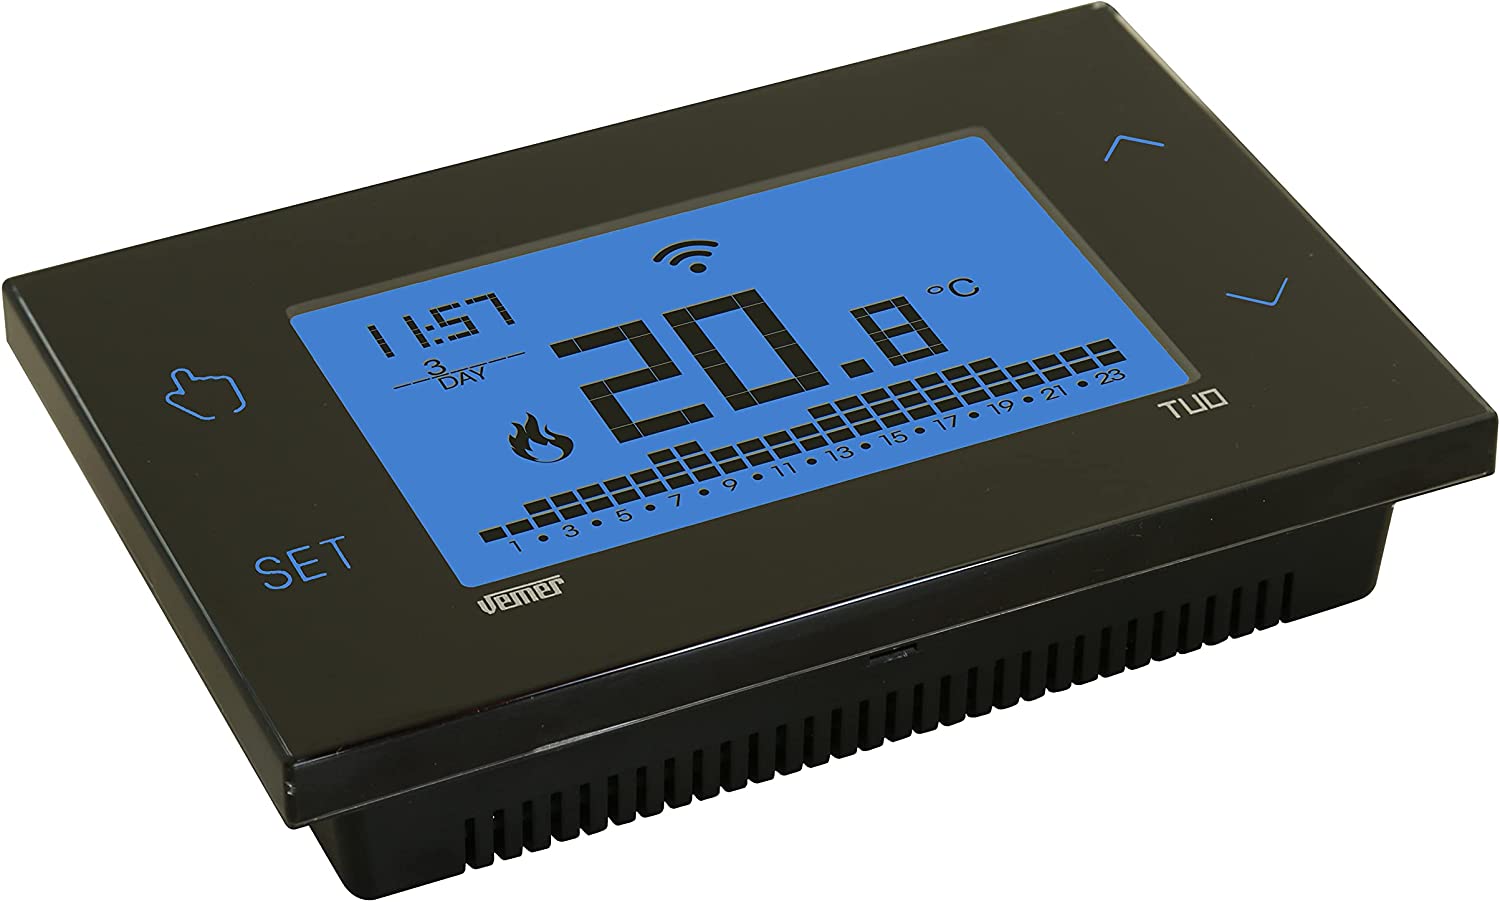 VEMER Thermostat Heizung Smart - WiFi Heizungsthermostat, Wochenprogrammierung, Steuerbar über Smartphone mit iOS und Android, kompatibel mit Alexa und Google Home, Schwarz